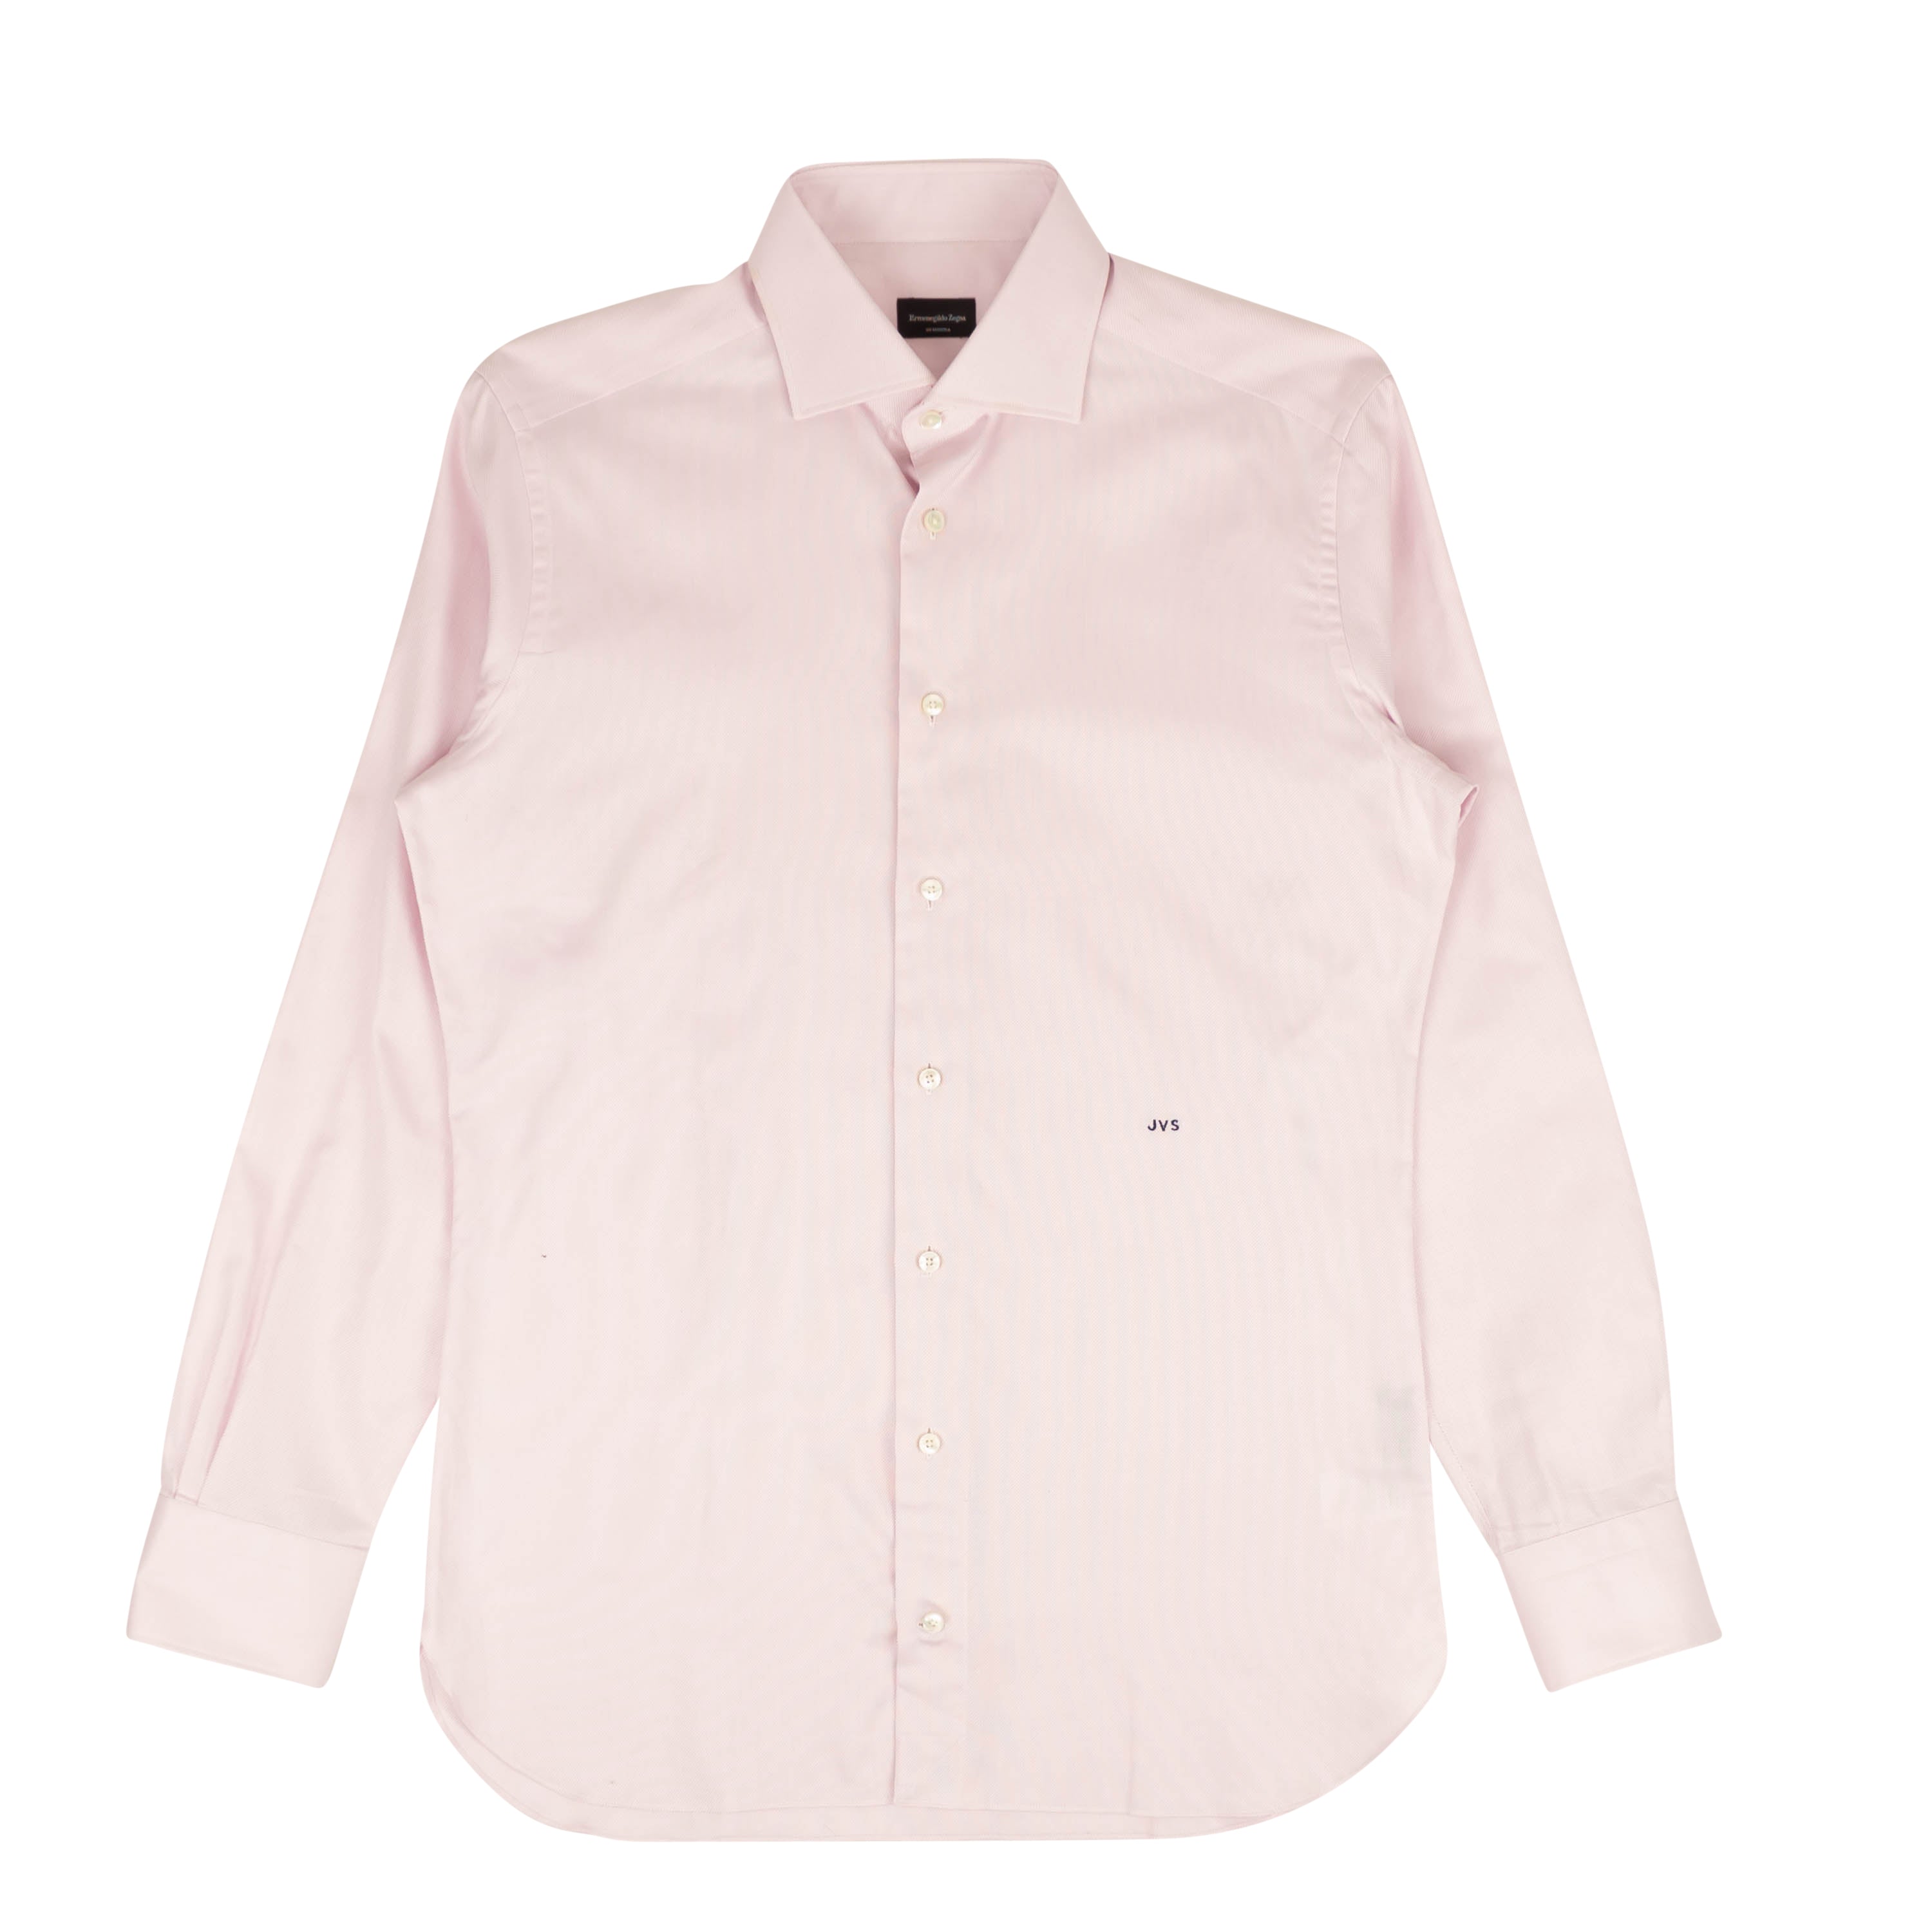 Ermenegildo Zegna Woven Dress Shirt - Pink